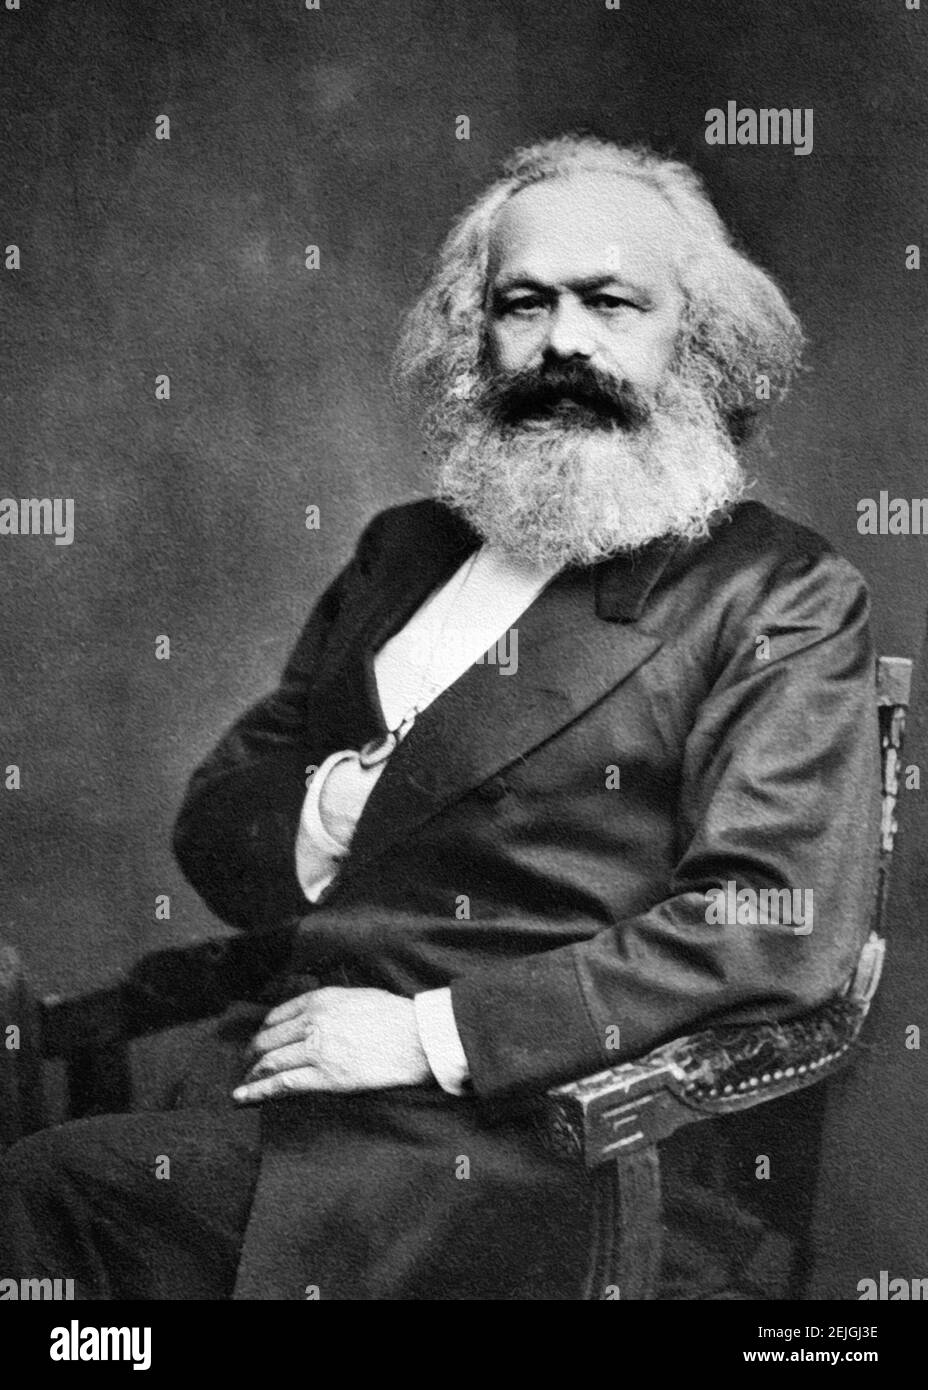 Karl Marx. Portrait du philosophe, économiste et écrivain socialiste allemand Karl Heinrich Marx (1818-1883), photo de John Jabez Edwin Mayal, 1875 Banque D'Images